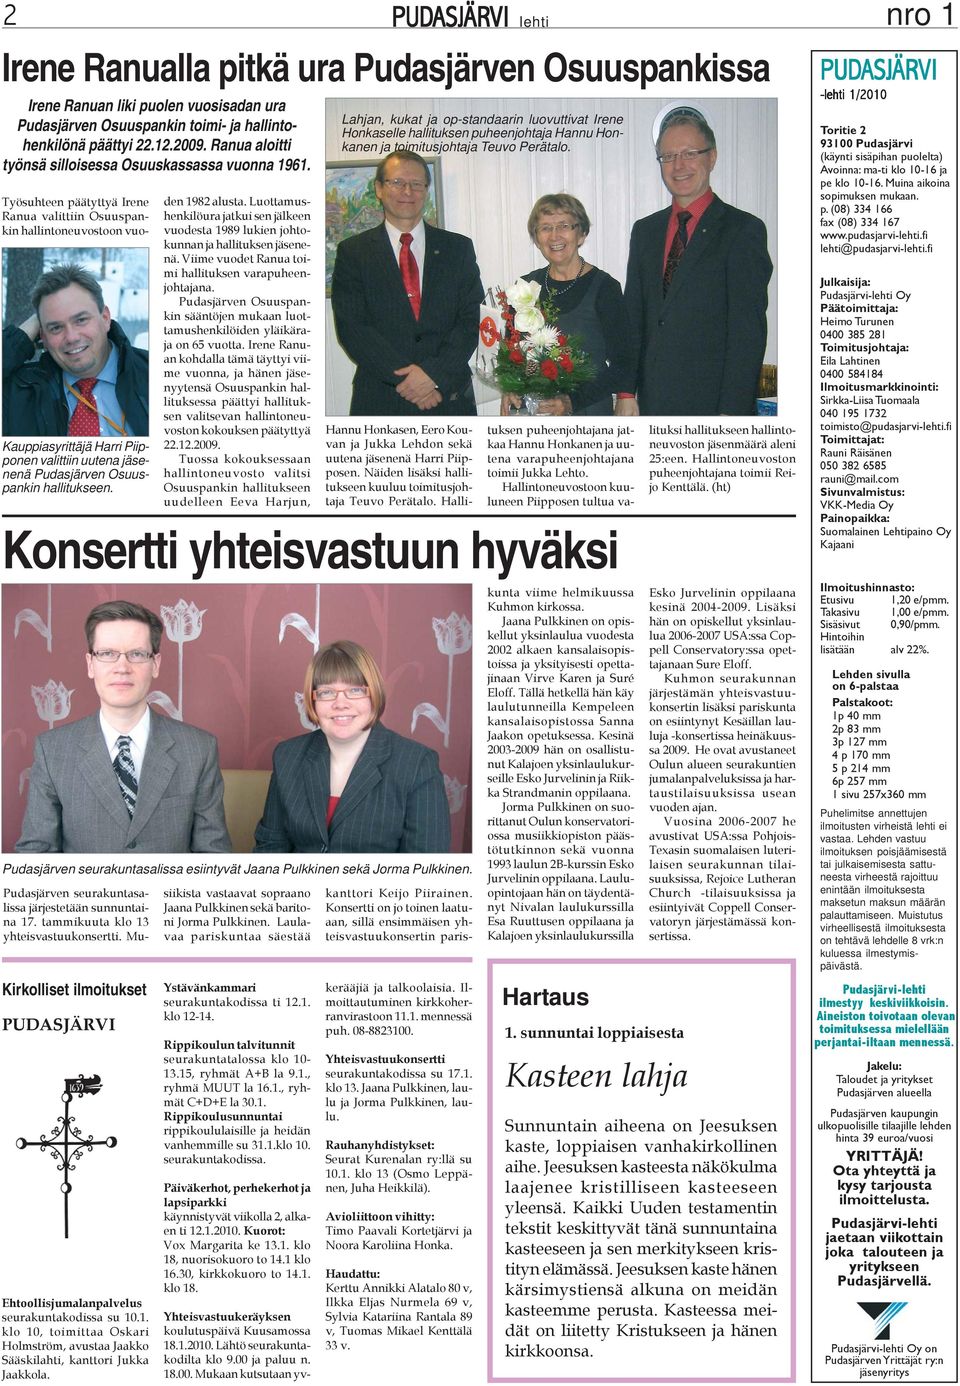 Työsuhteen päätyttyä Irene Ranua valittiin Osuuspankin hallintoneuvostoon vuo- Kauppiasyrittäjä Harri Piipponen valittiin uutena jäsenenä Pudasjärven Osuuspankin hallitukseen. den 1982 alusta.